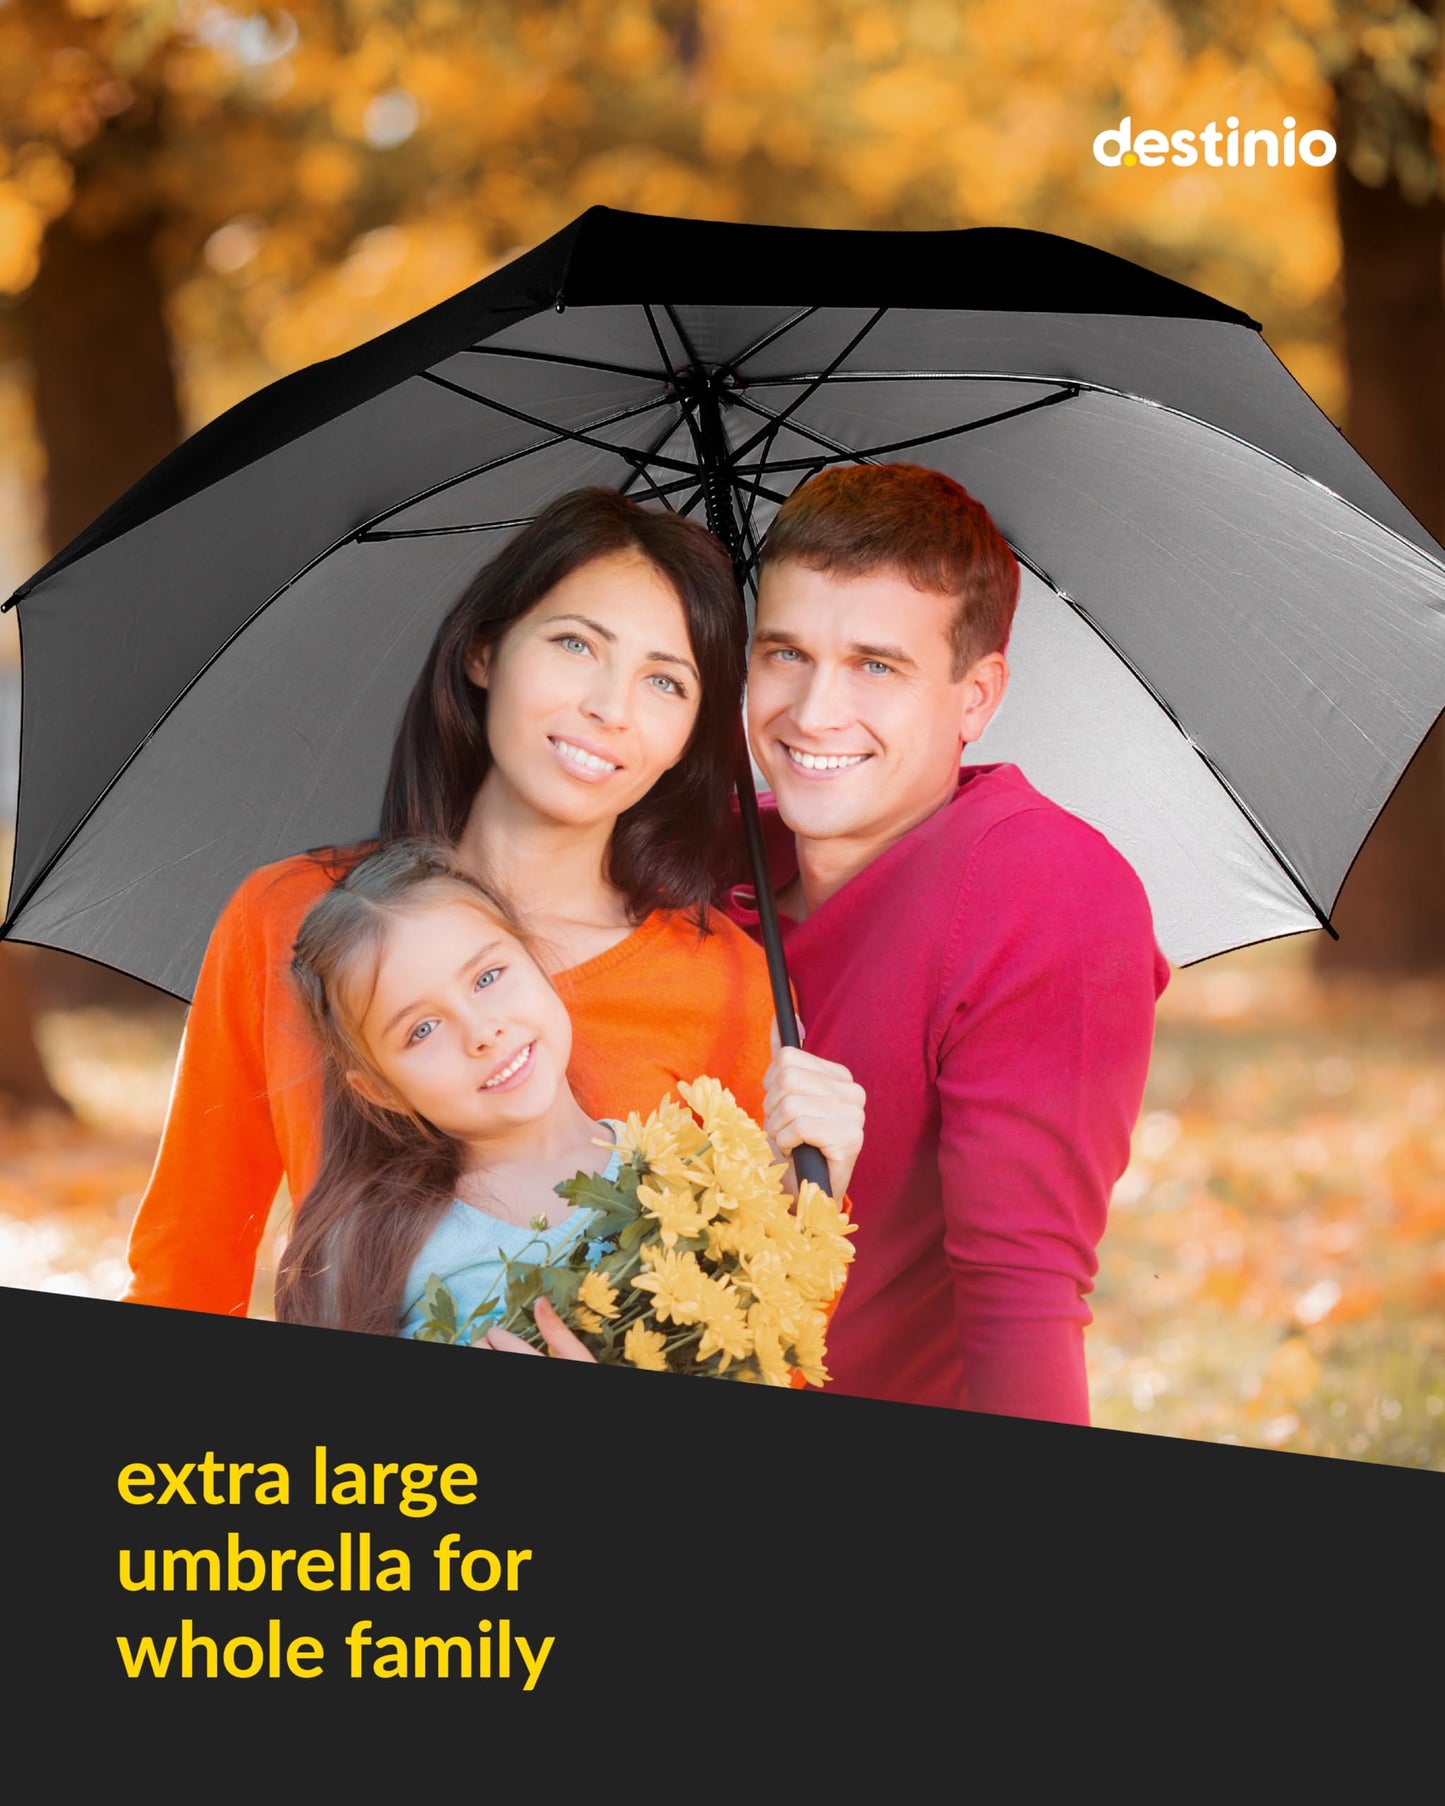 Destinio Big Umbrella - Auto Open 54 inch Umbrella for Men with UV protection - Umbrella Big Size for Rain with rain cover, Large Umbrella (Black, 1 unit) (Black 27 Inch)